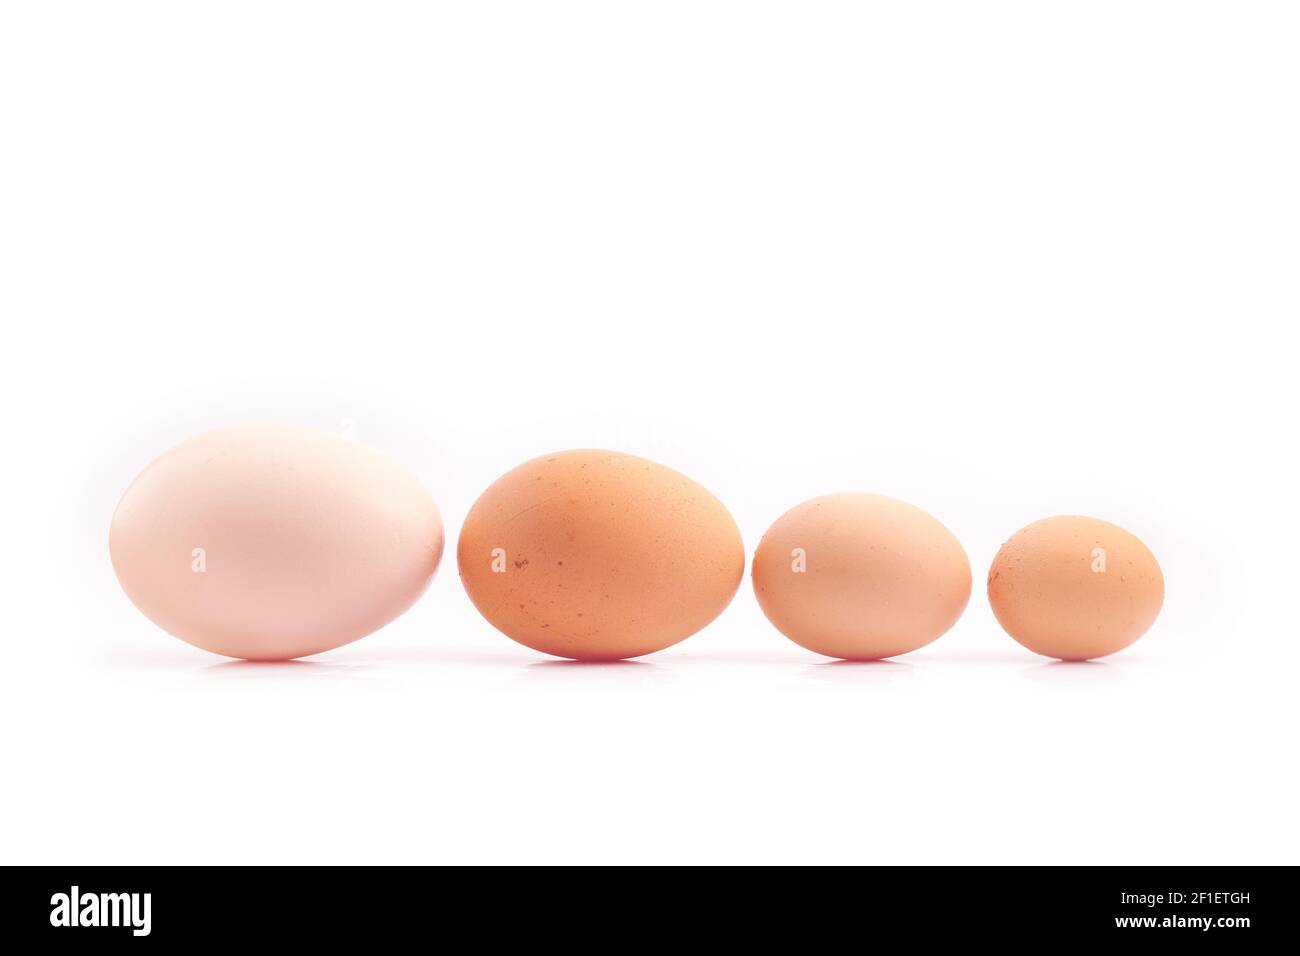 Eier - vier Hühnereier in verschiedenen Größen aufgereiht, sortiert nach Größe, isoliert auf weißem Hintergrund Stockfoto